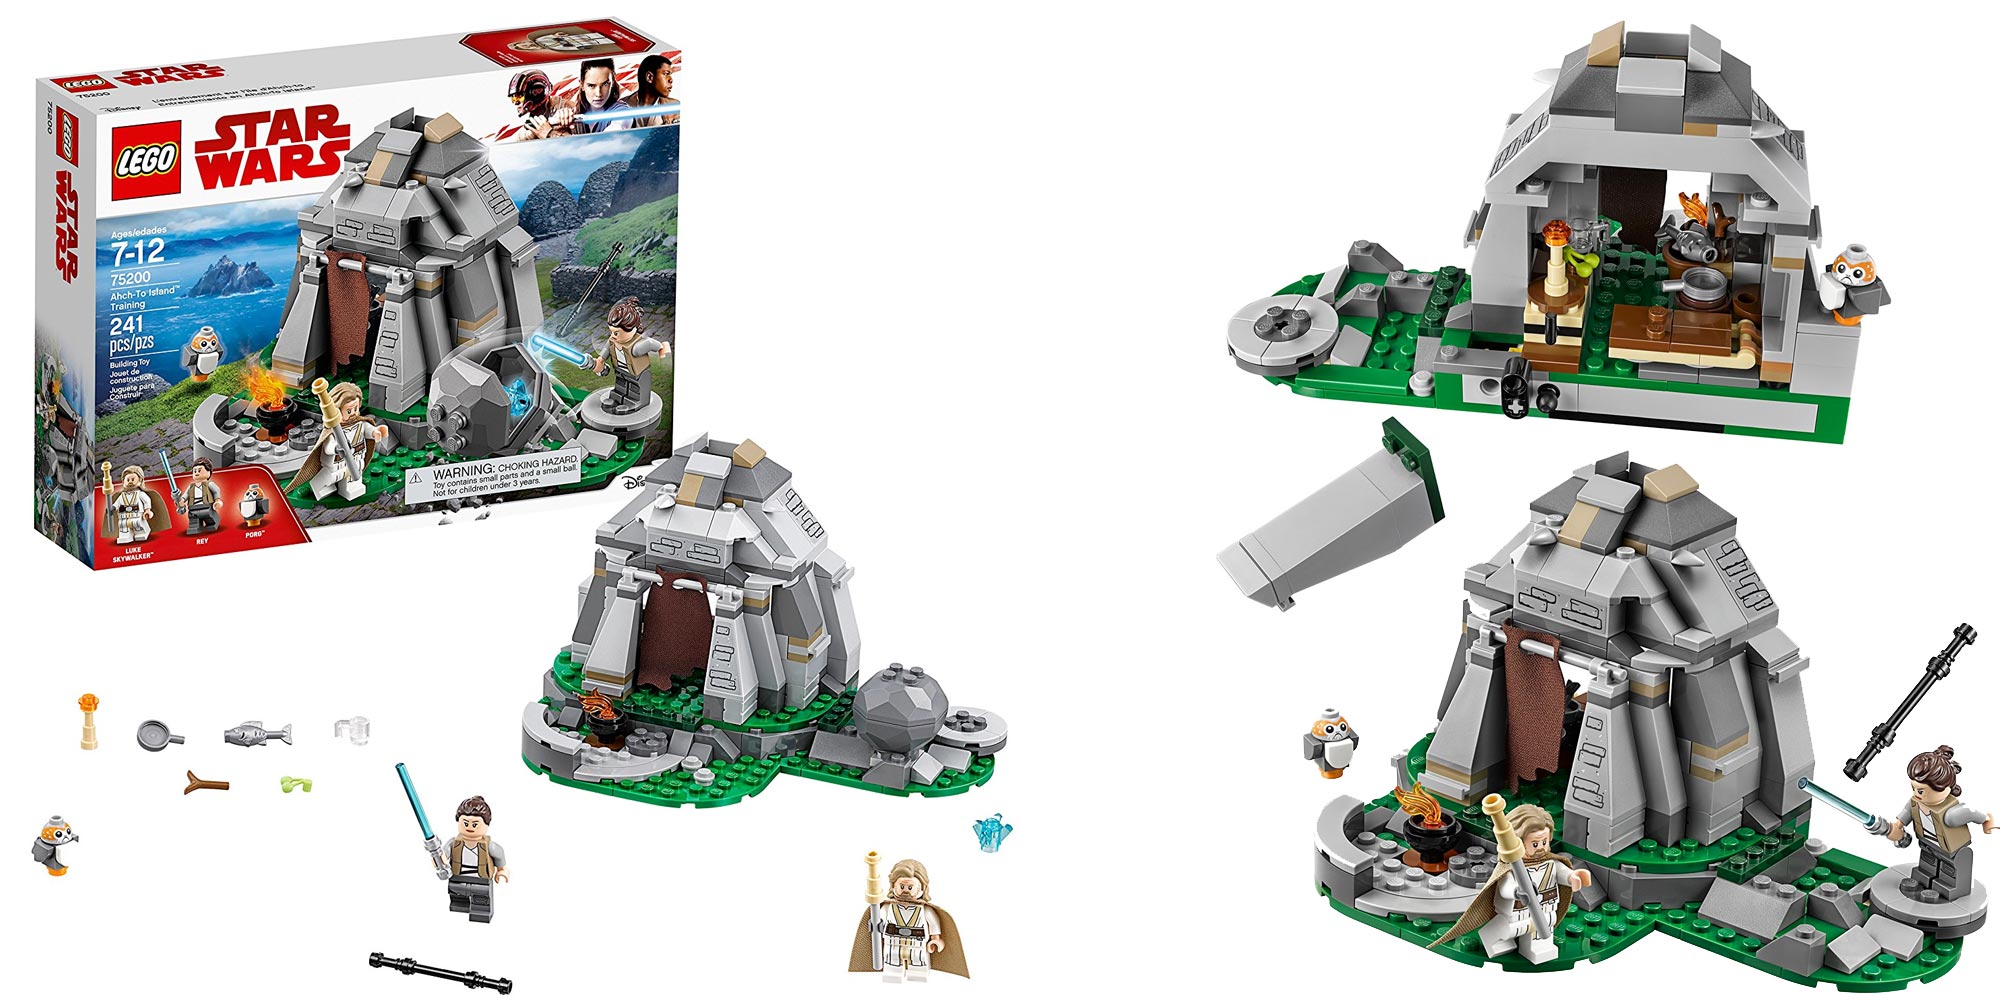 LEGO Star Wars: The Last Jedi Ahch-To Island Training 75200 (241